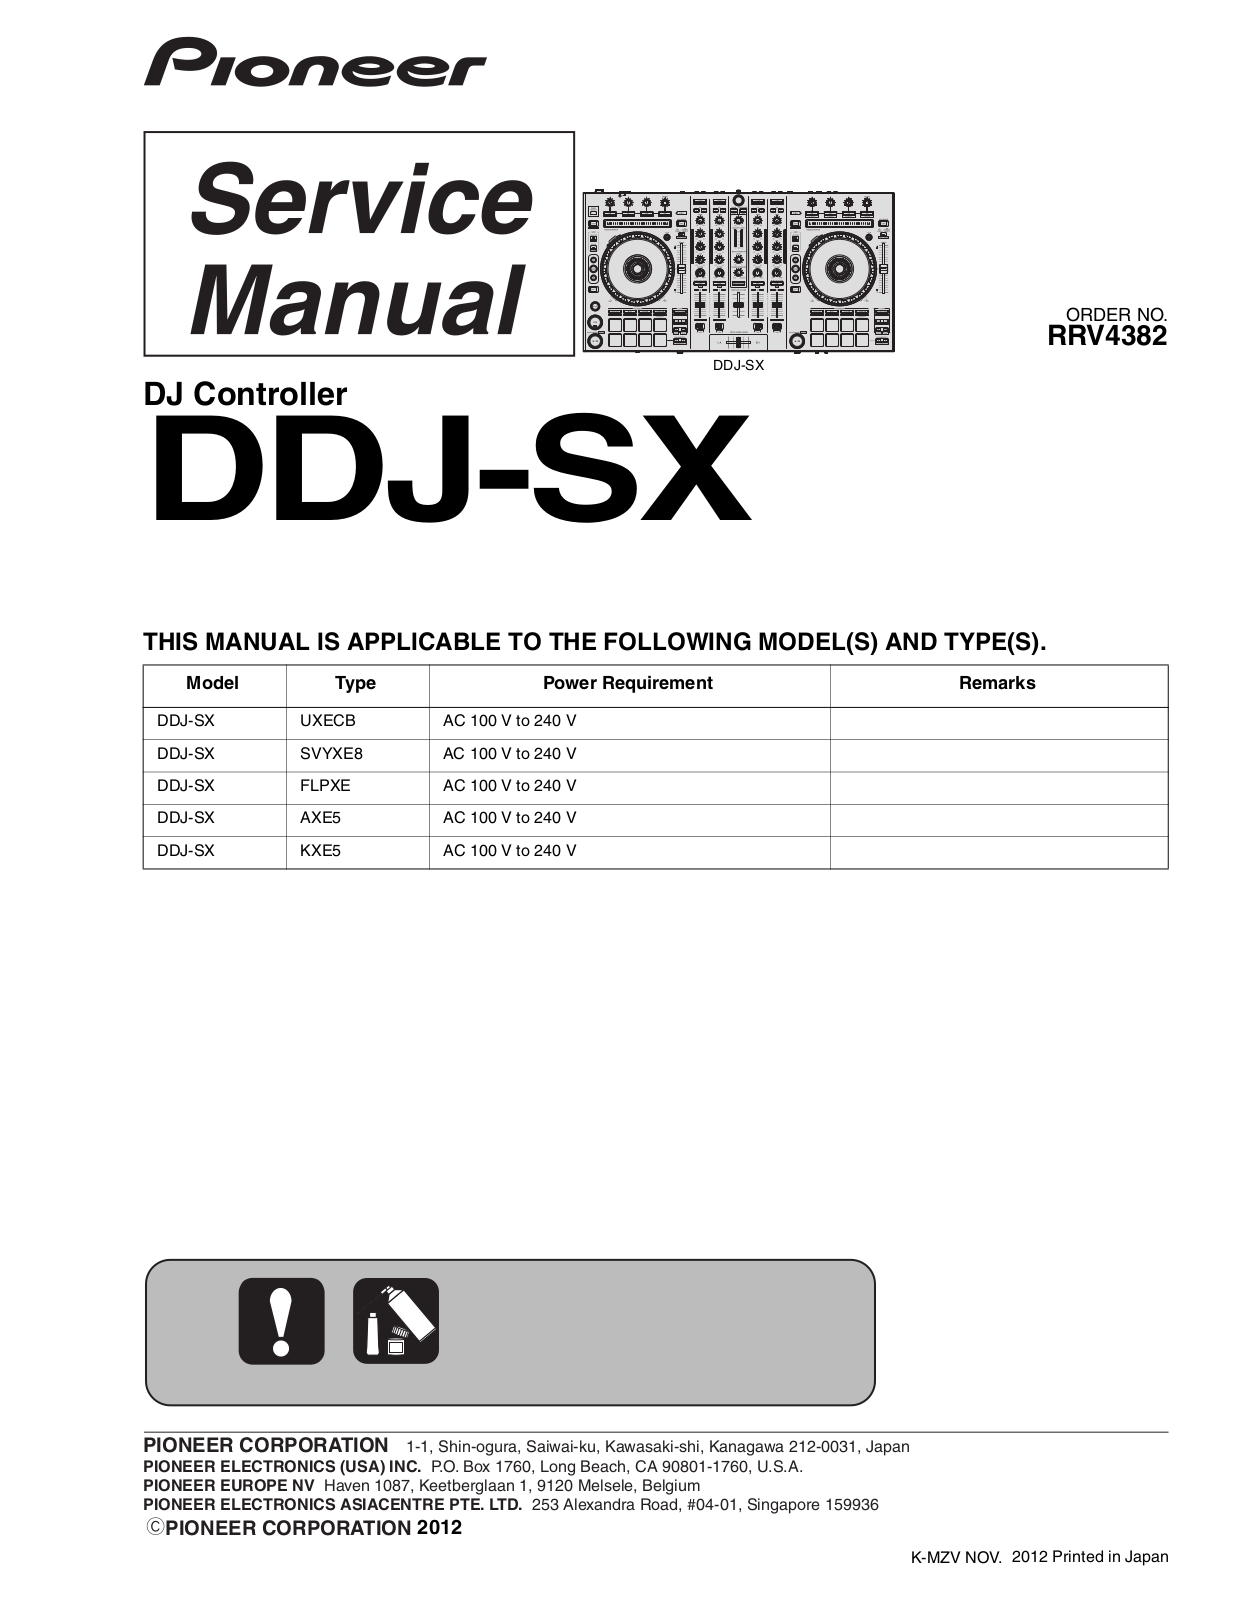 Pioneer DDJ-SX Service manual